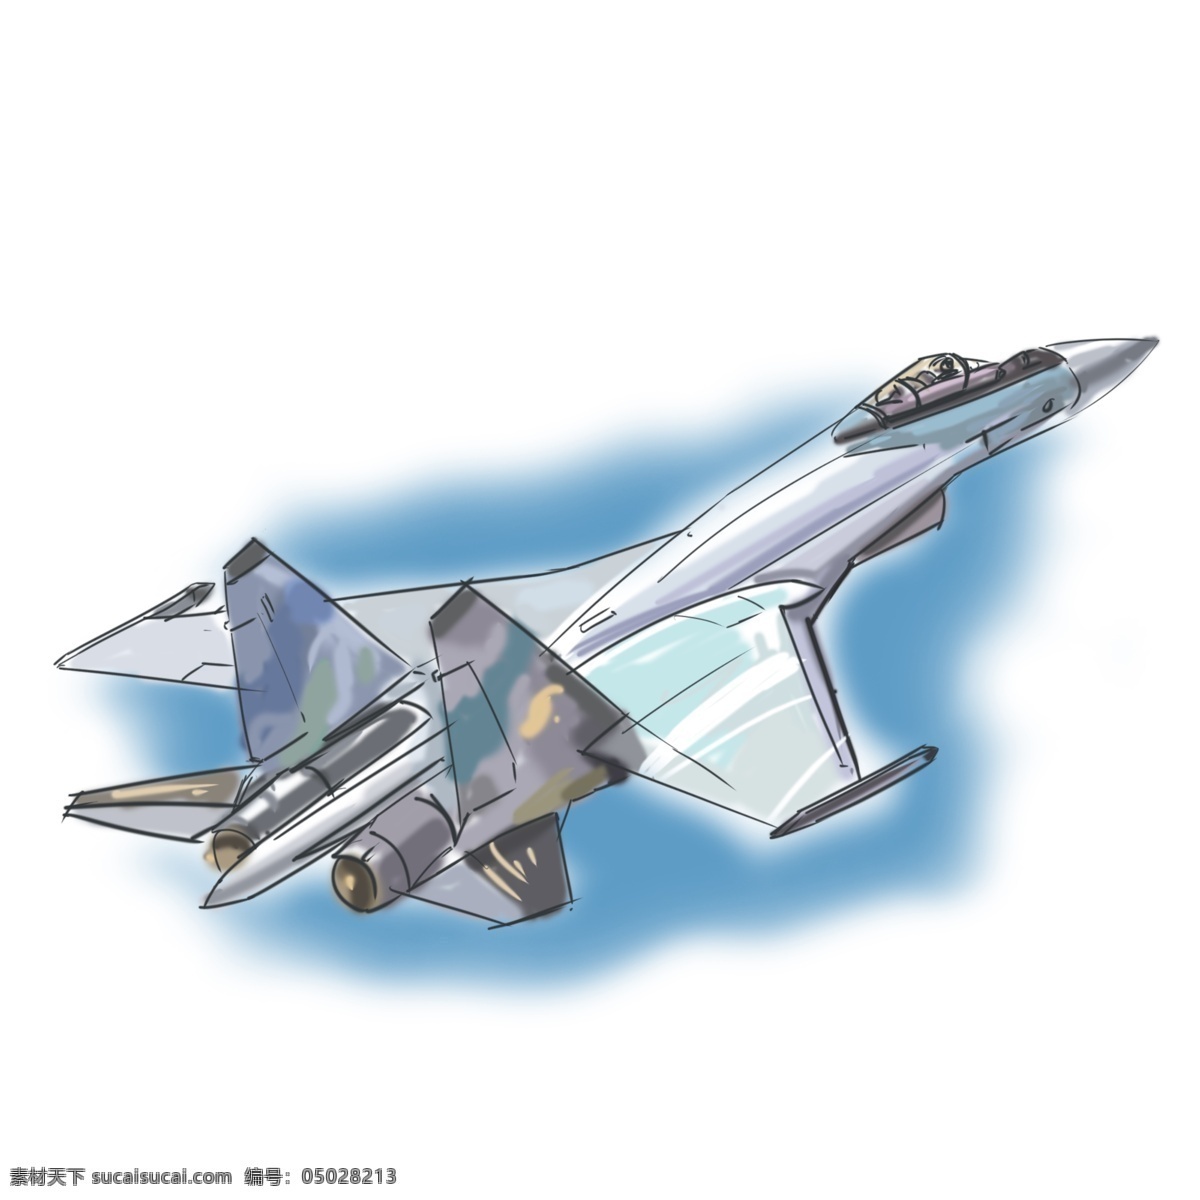 飞机 主题 战斗机 卡通 手绘 风格 歼击机 强击机 飞速 飞行 军事武器 天空 导弹 攻击 卡通手绘 写实风格